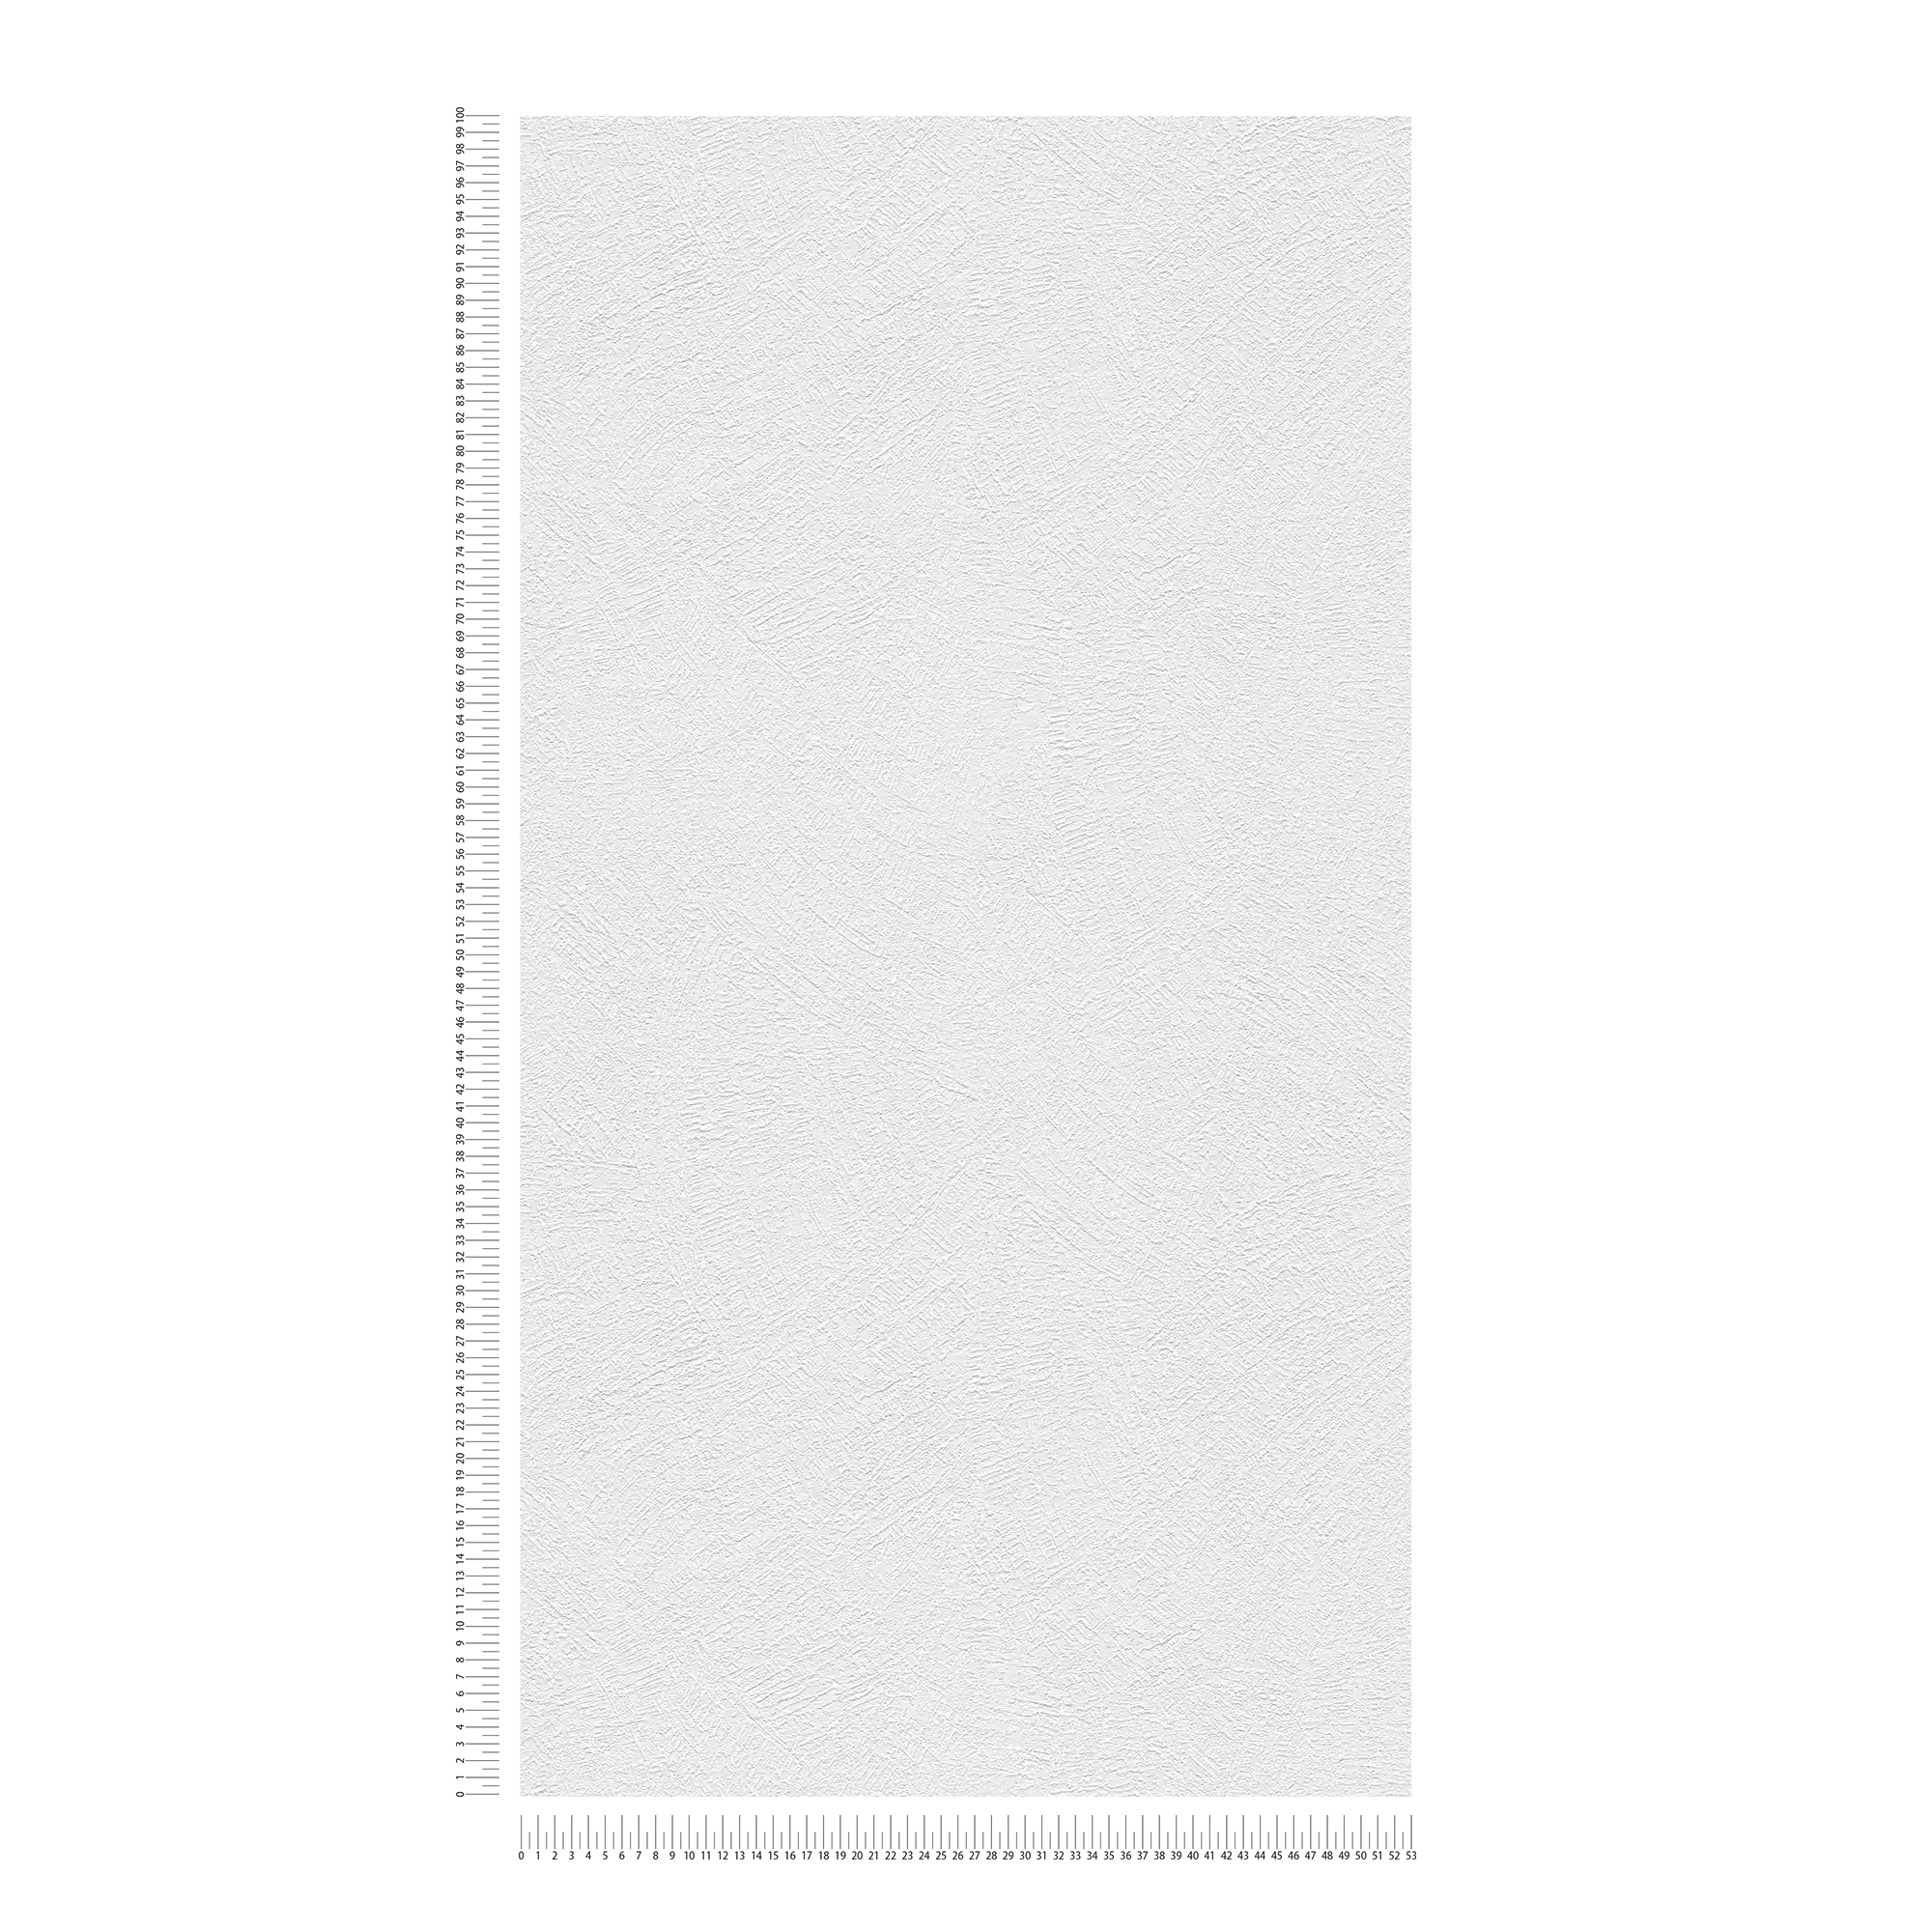             Papier peint Zierer-Putzoptik avec design structuré - Blanc
        